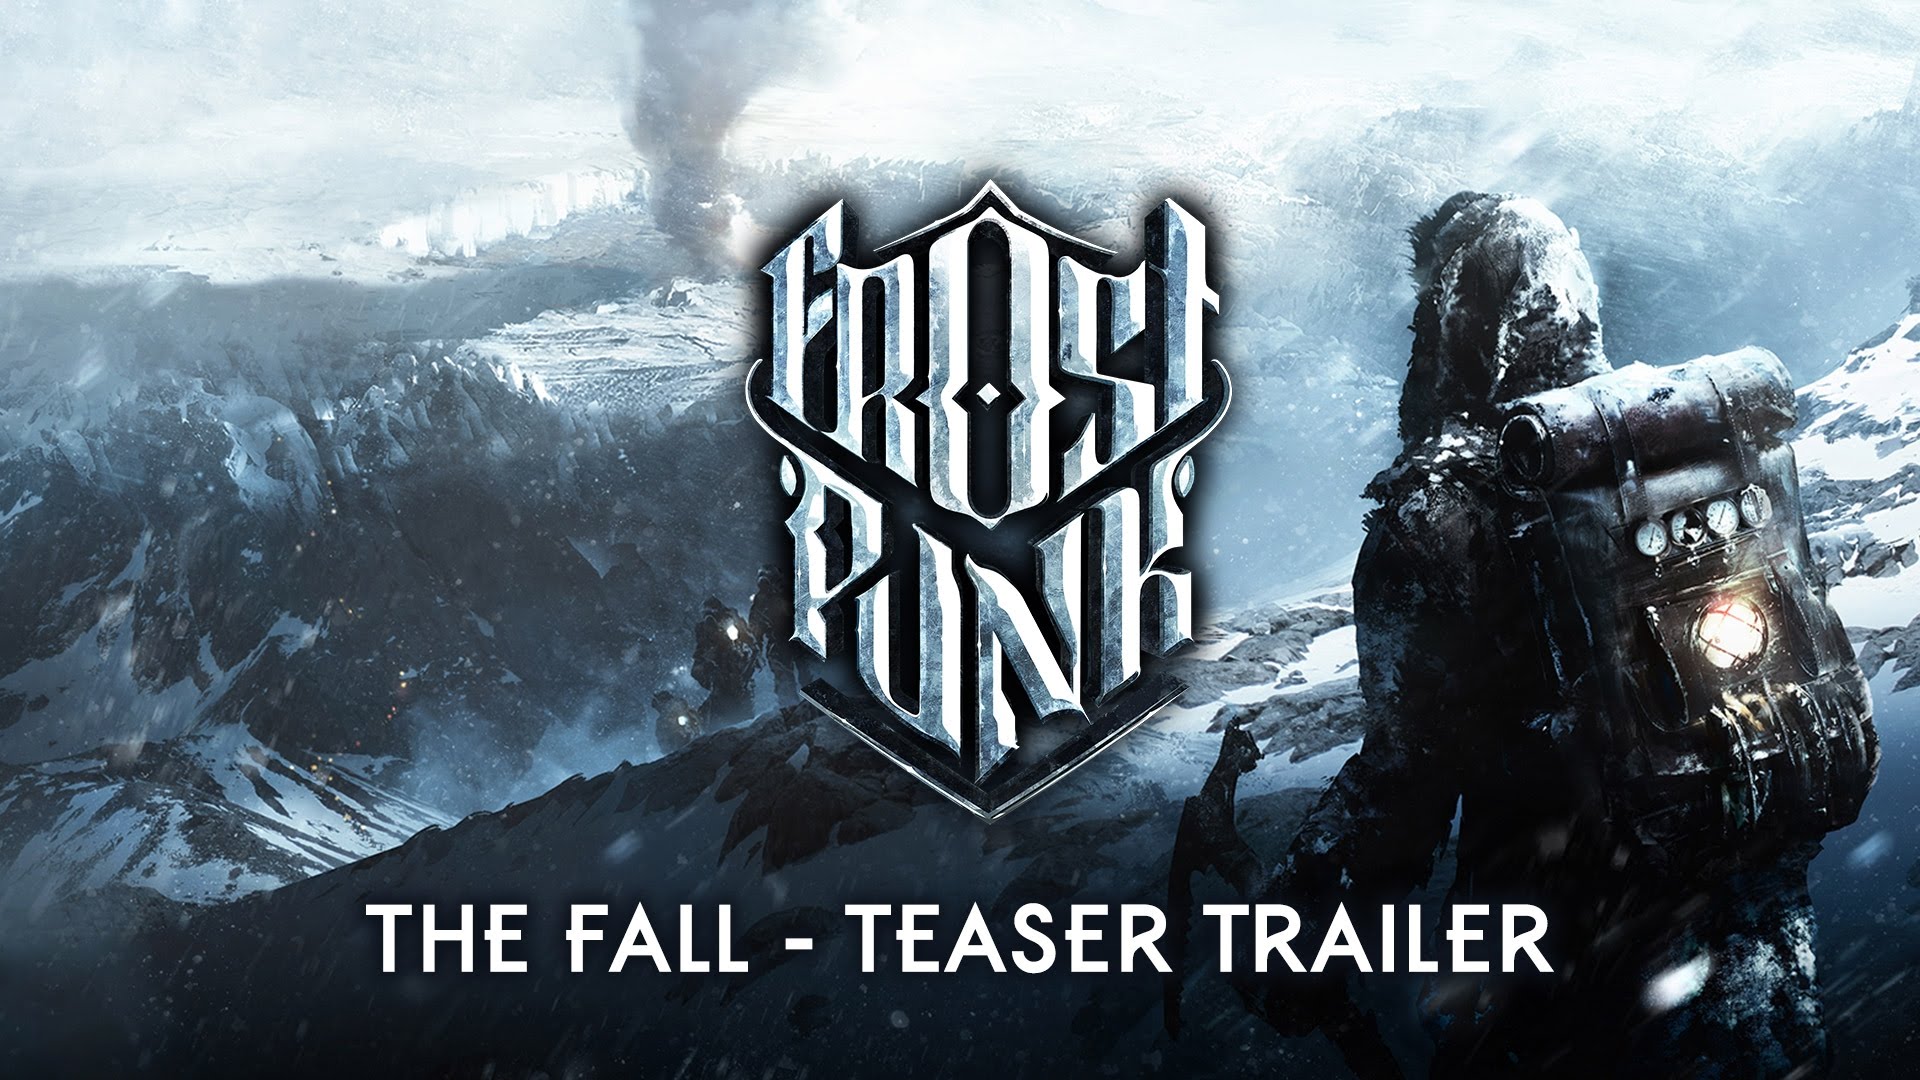 Frostpunk teaser trailer - The Fall